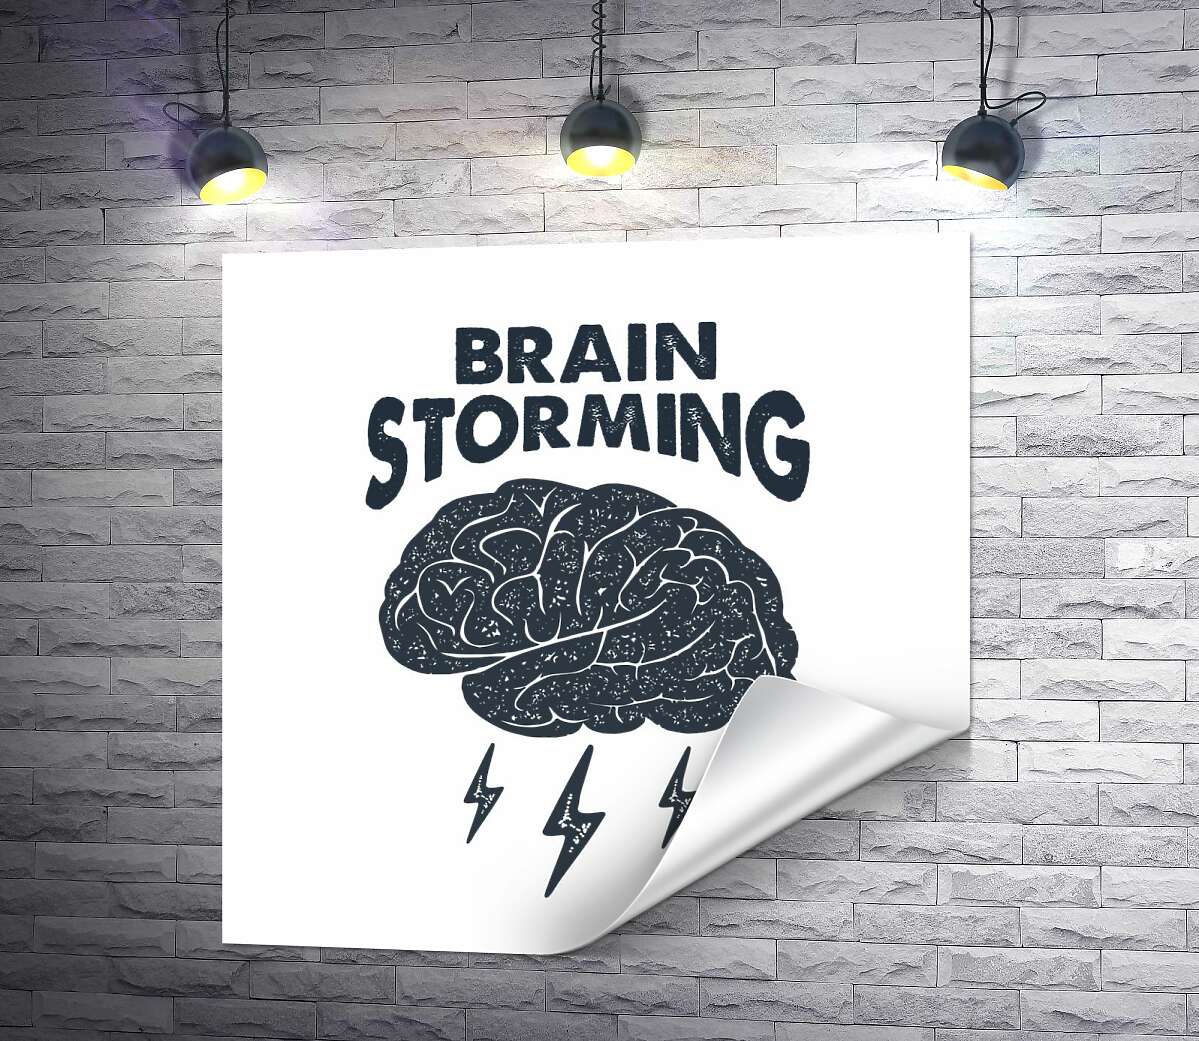 печать Мозг издает молниеносные идеи наряду с фразой "brain storming"